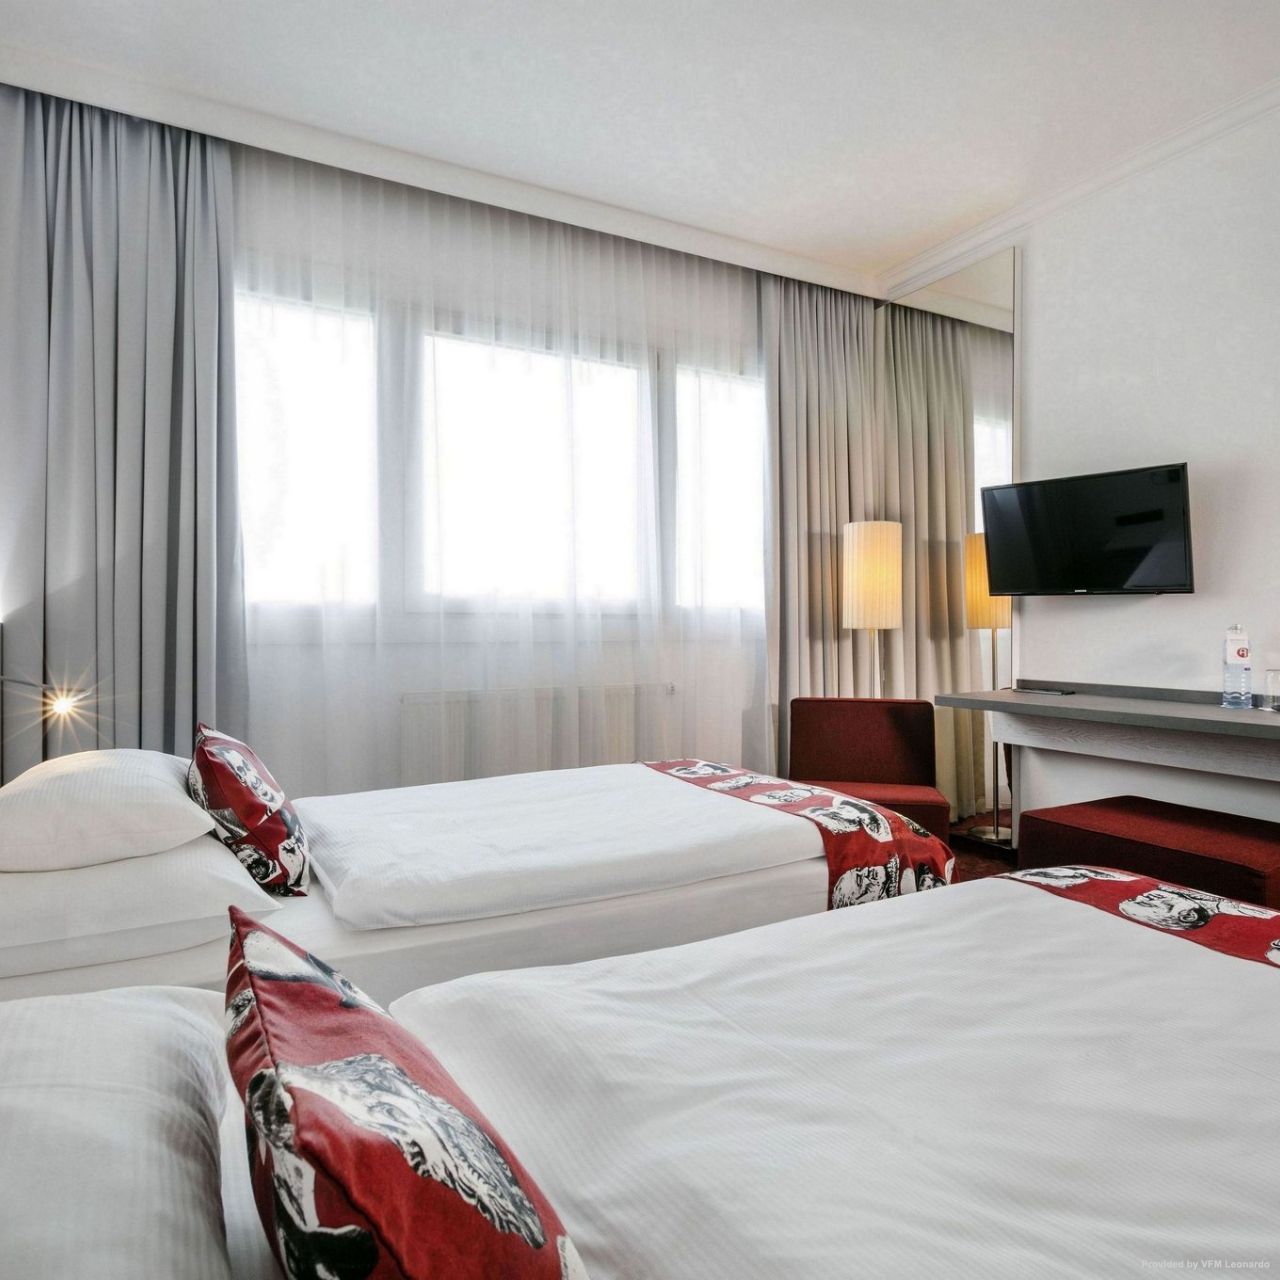 Hotel Arcotel Nike en Linz - HOTEL INFO